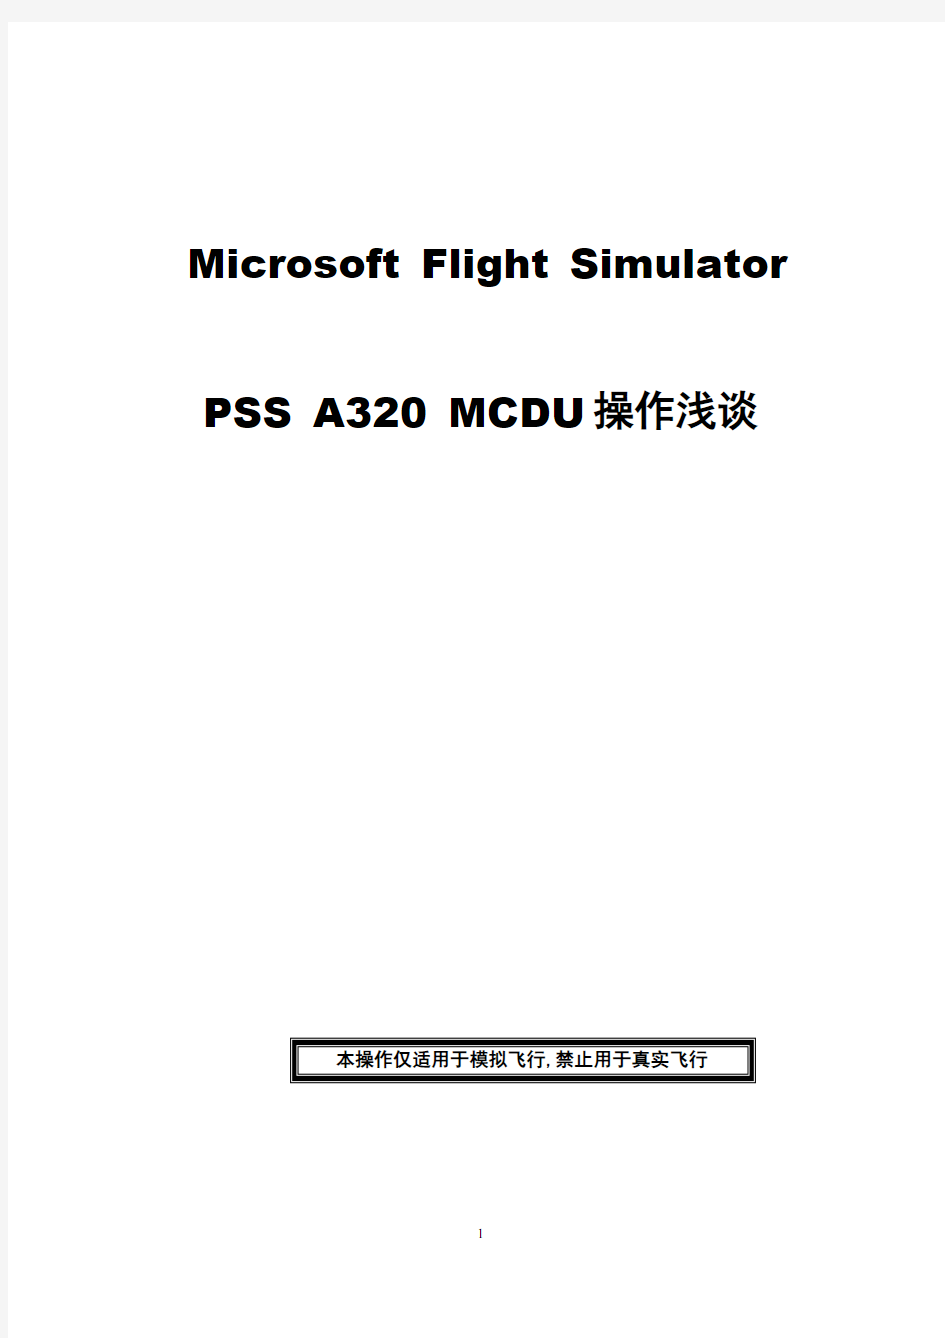 A320 MCDU操作手册